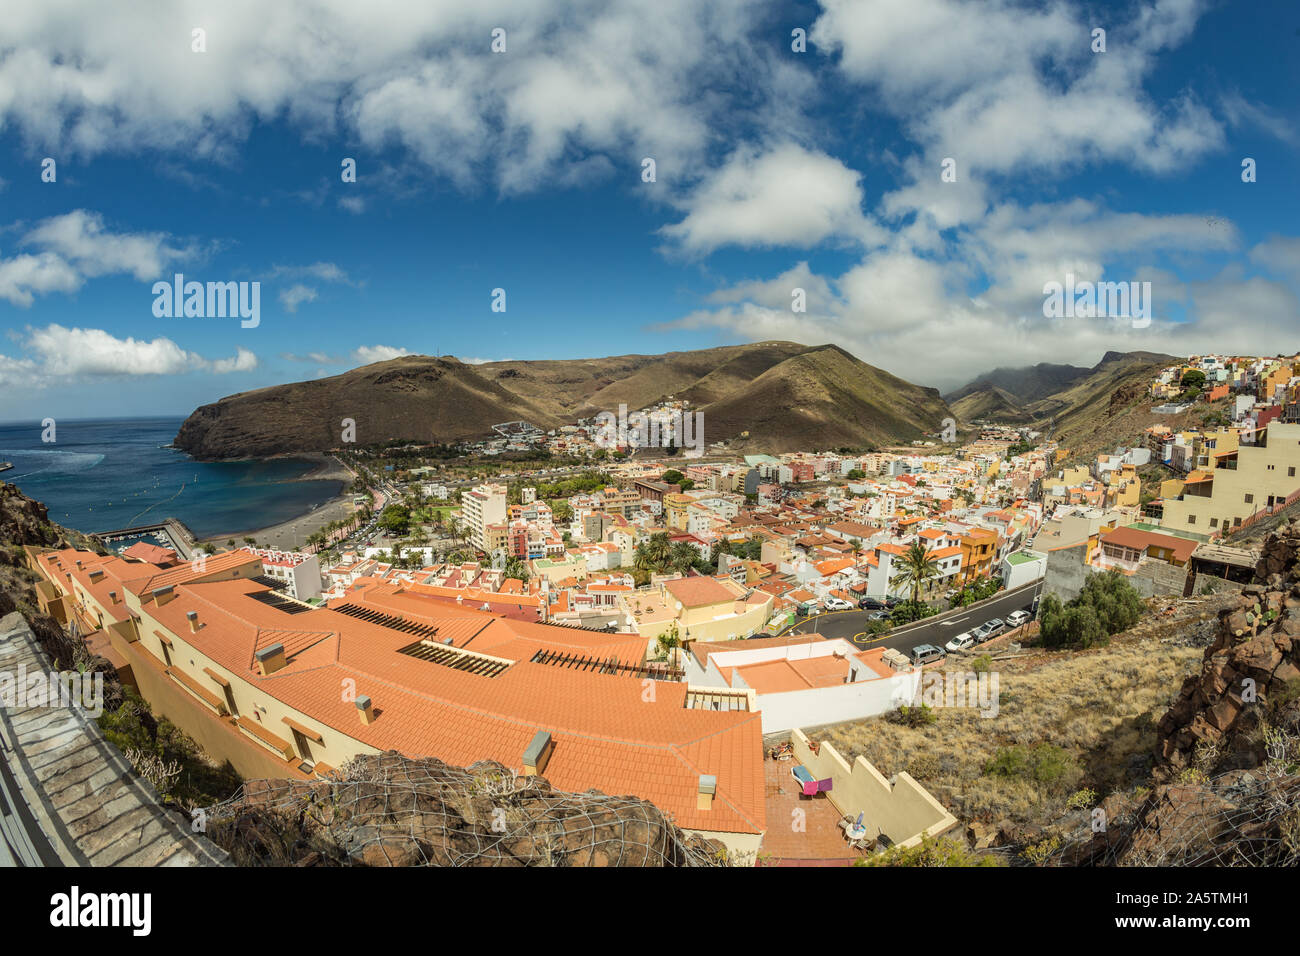 Vista aerea dalla montagna per il porto principale dell'isola di La Gomera. Tetti colorati e case sul pendio del Vulcano di San Sebastian de la Gomera, S Foto Stock